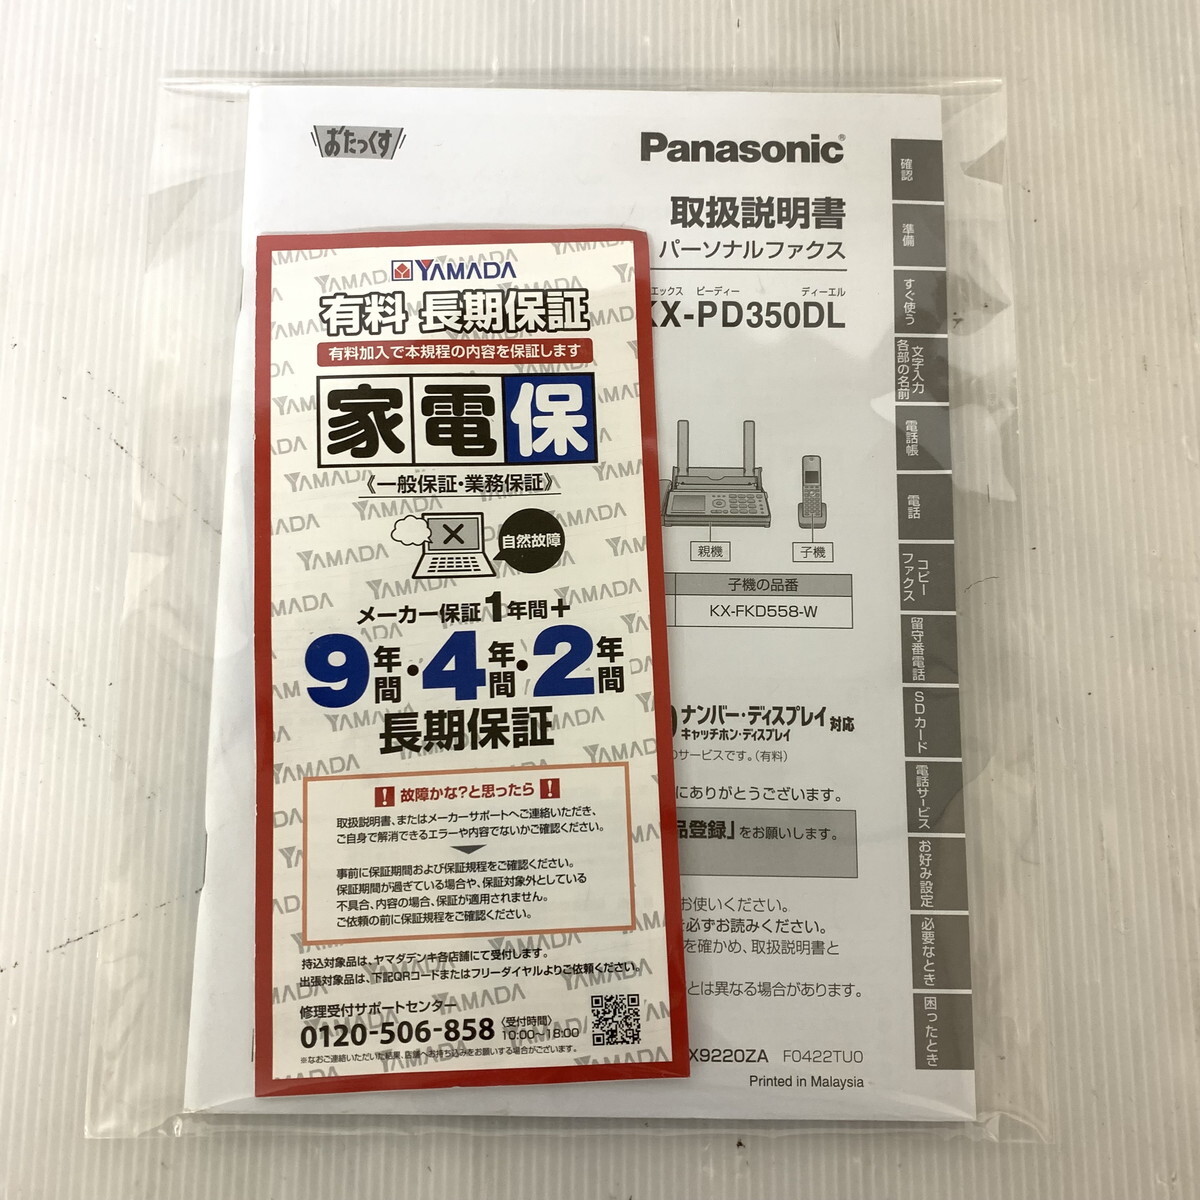 Panasonic Panasonic personal fax KX-PD350DL * operation verification settled (M0502-1)